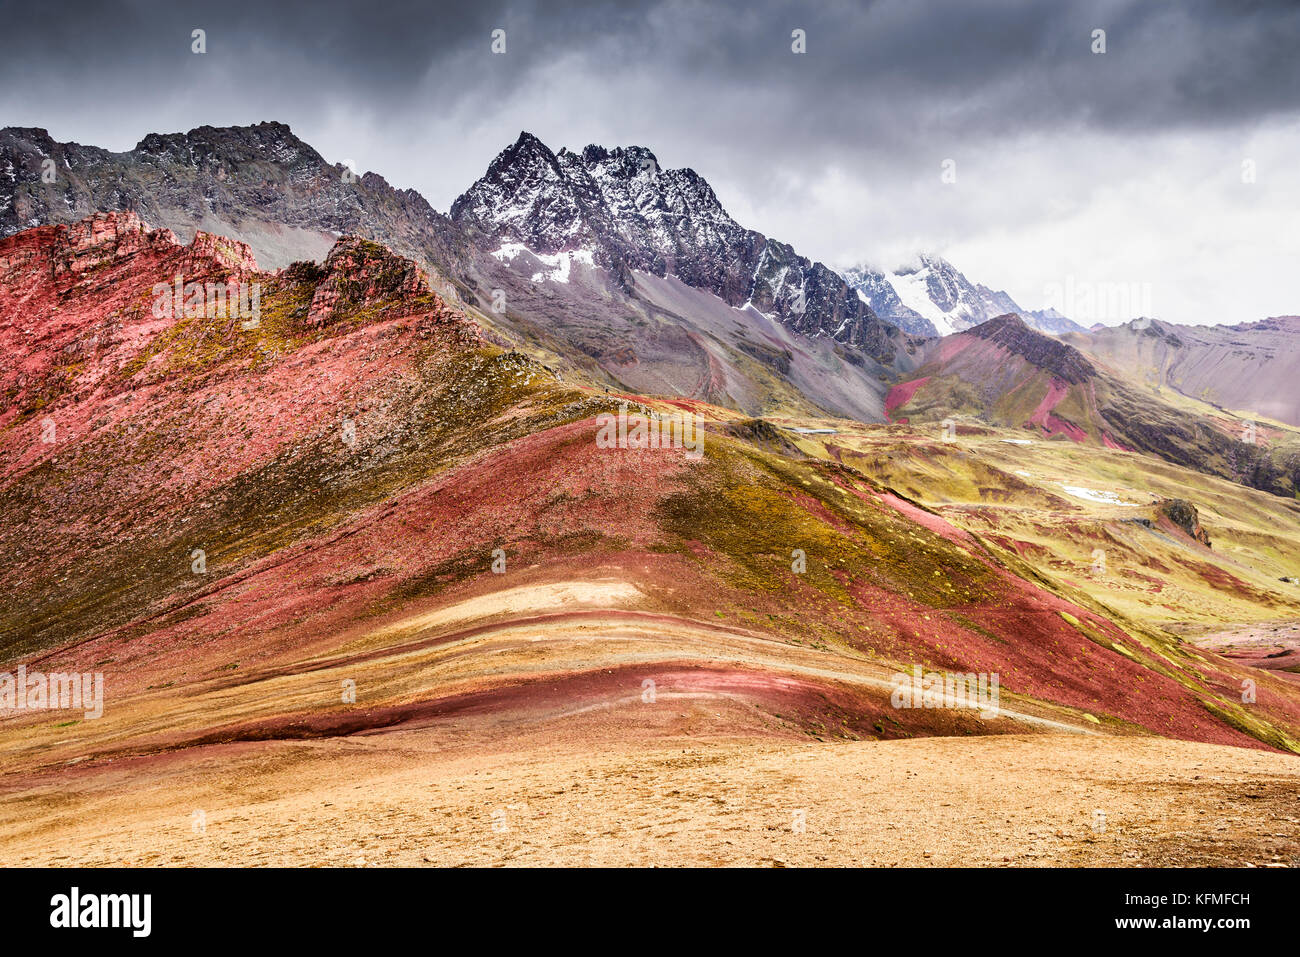 Vinicunca, Perù - Cordigliera Vilcanota e Rainbow Mountain (5200 m) nelle Ande Cordillera de los Andes, regione di Cusco in Sud America. Foto Stock